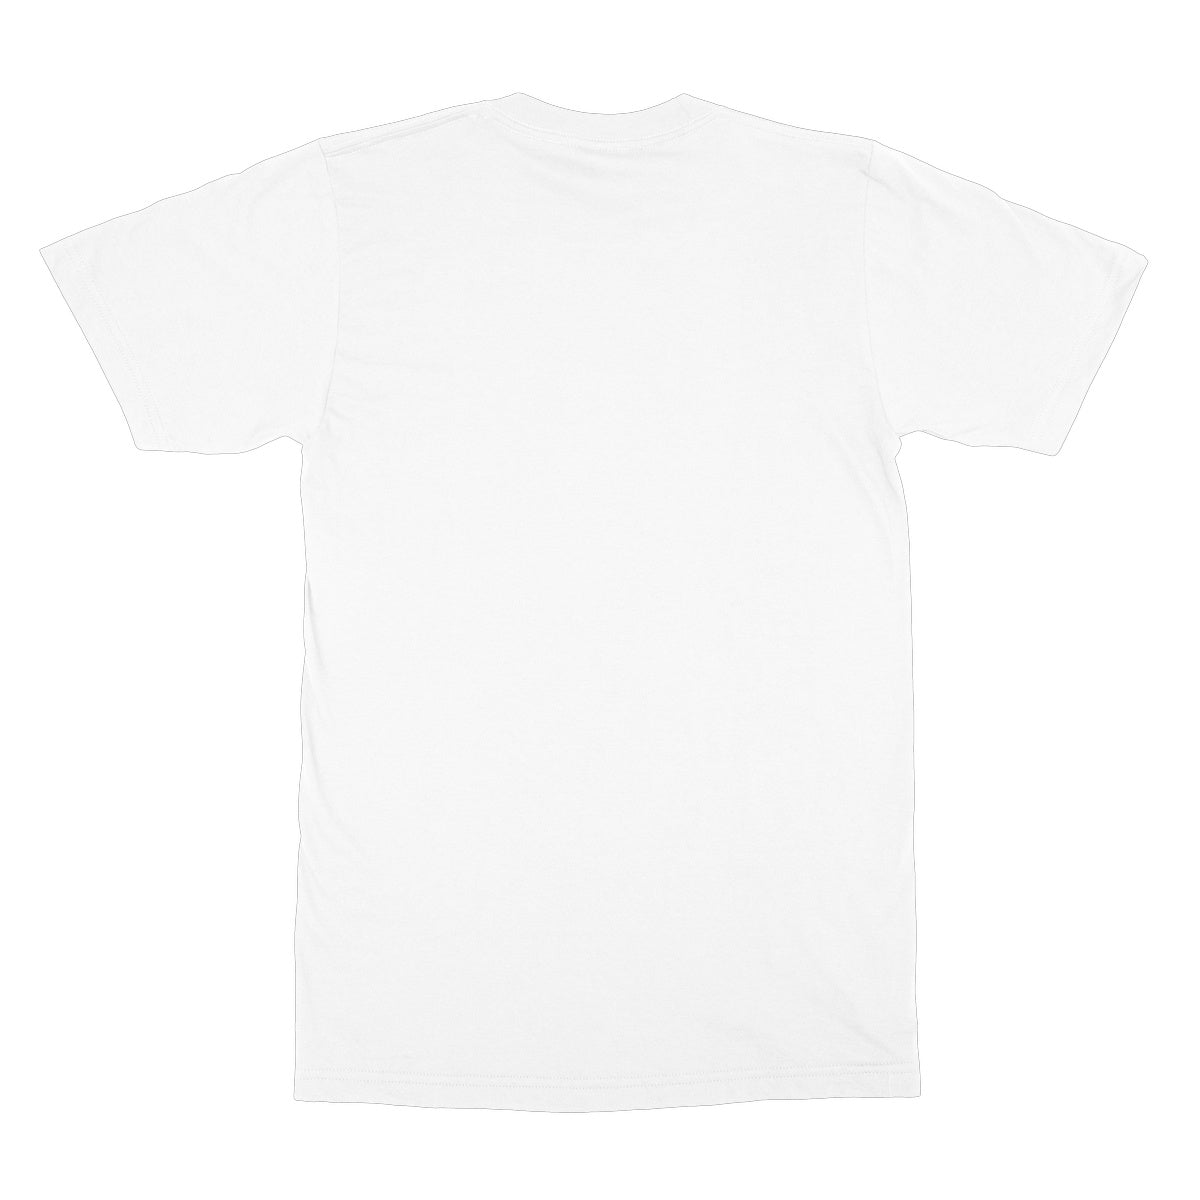 Celtic Diamond T-Shirt